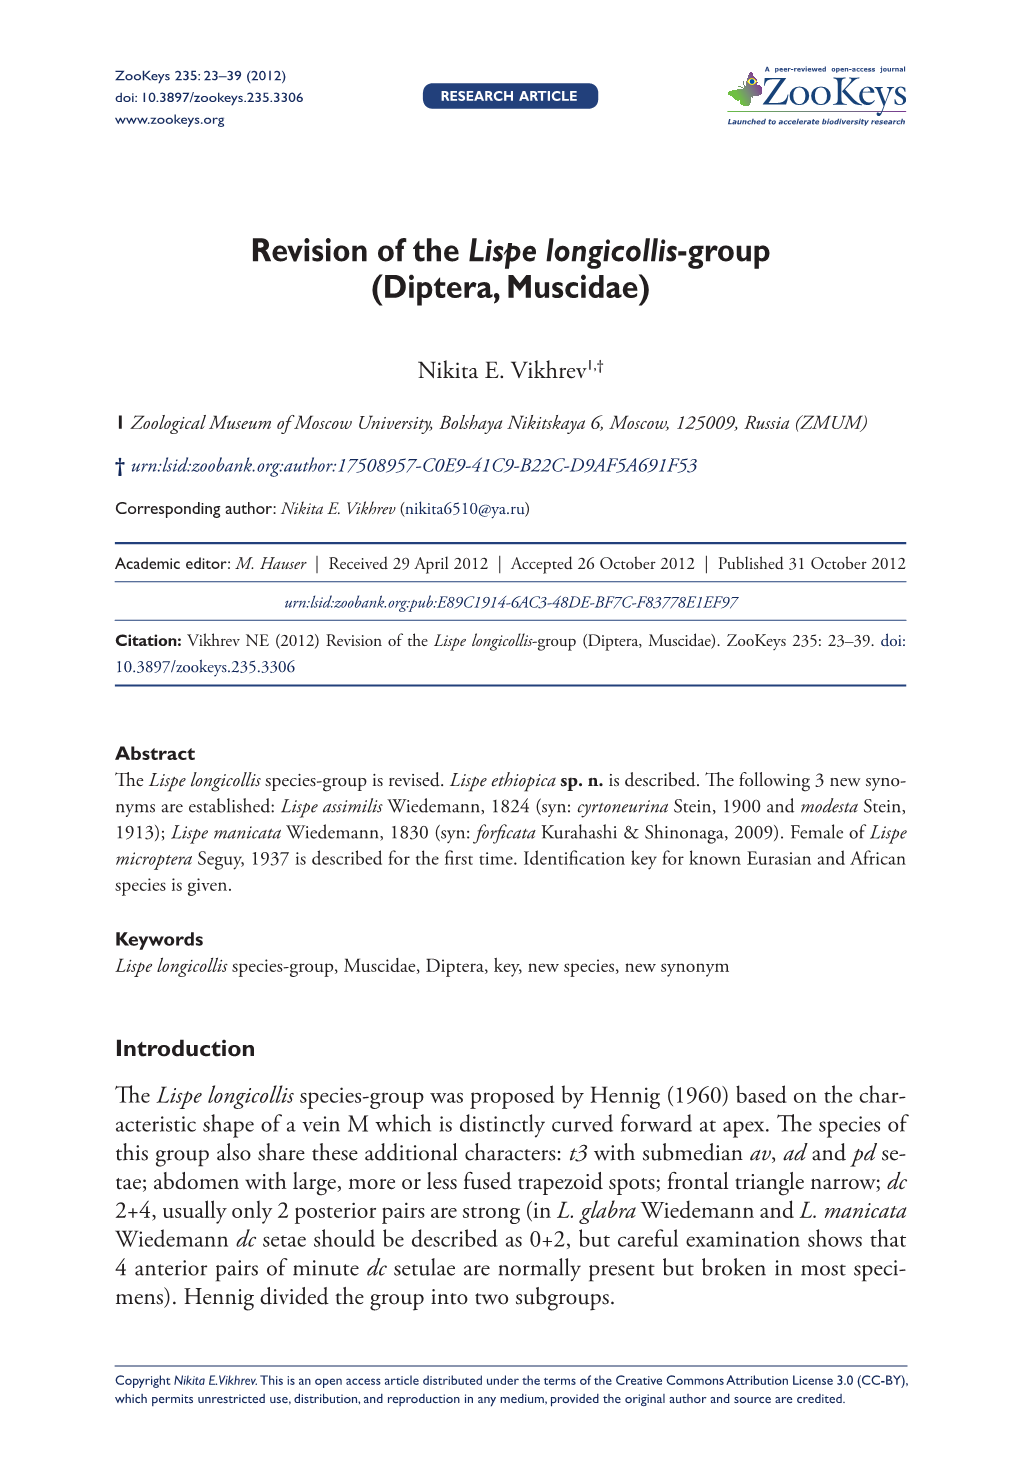 Revision of the Lispe Longicollis-Group (Diptera, Muscidae)